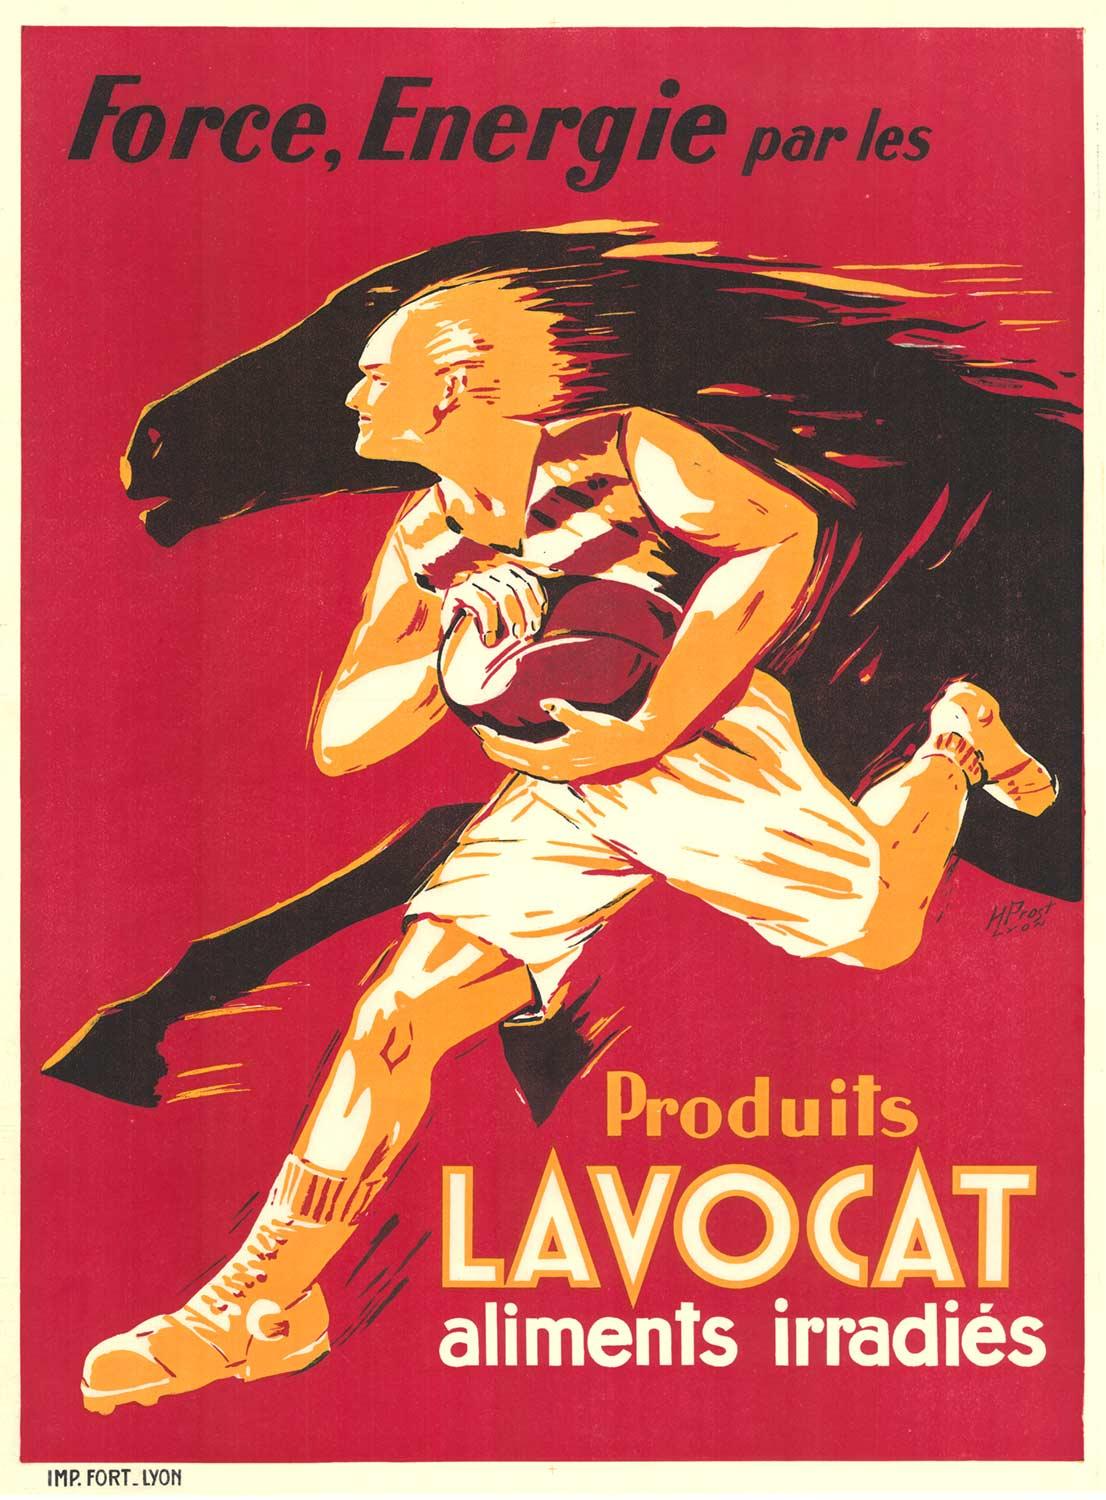 Vintage-Poster „Produits Lavocat“ für Force and Energy